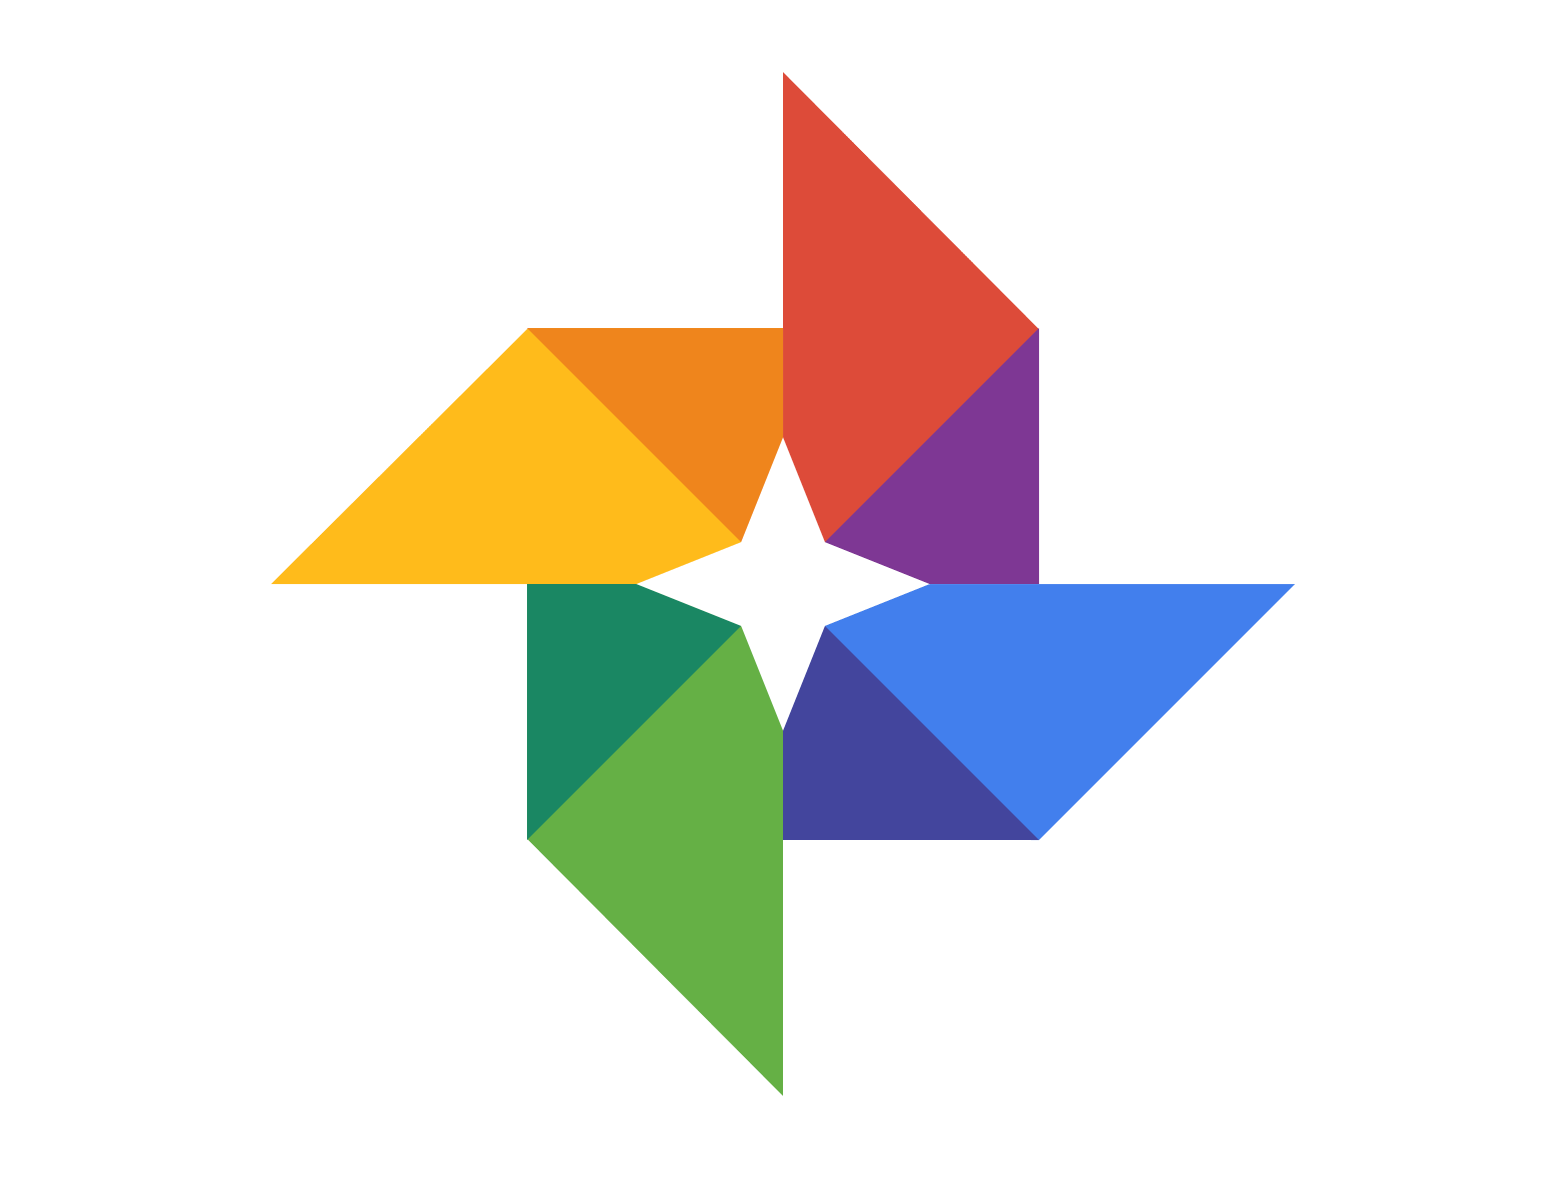 Google फ़ोटो ऐप में नई सुविधा जोड़ता है: उपयोगकर्ता अब देख सकते हैं कि उन्हें कितनी बार किसी भी हटाए गए चित्र को पुनर्स्थापित करना है